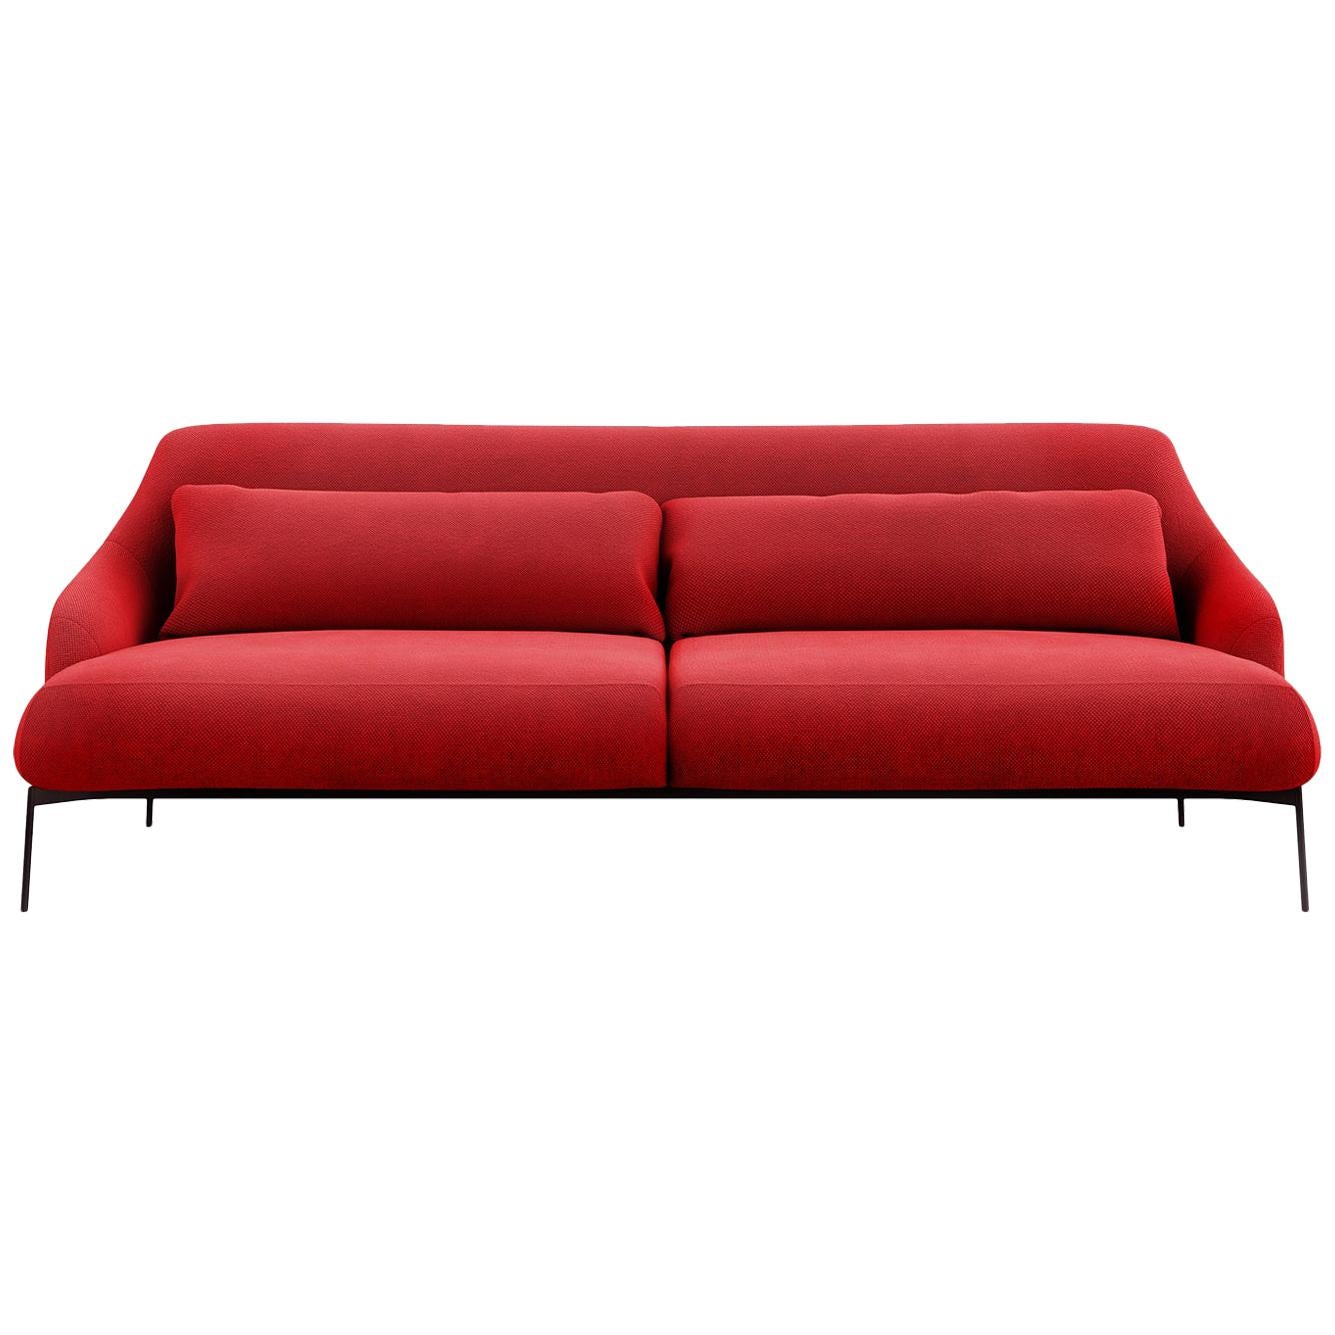 Tacchini Lima Two-Seater Sofa in Red Fabric by Claesson Koivisto Rune